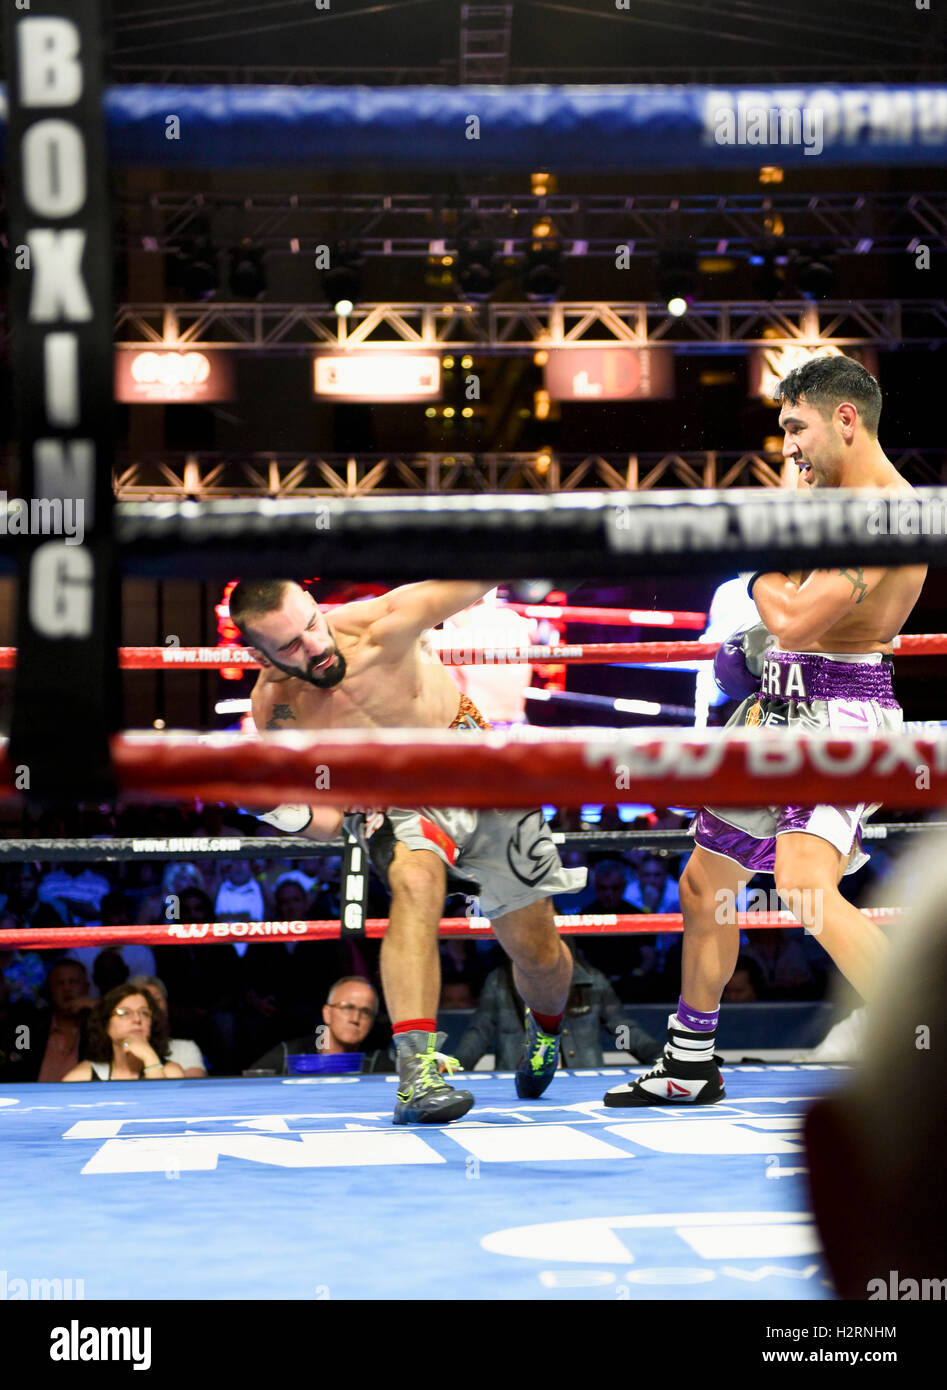 Knockout boxing -Fotos und -Bildmaterial in hoher Auflösung - Seite 12 -  Alamy